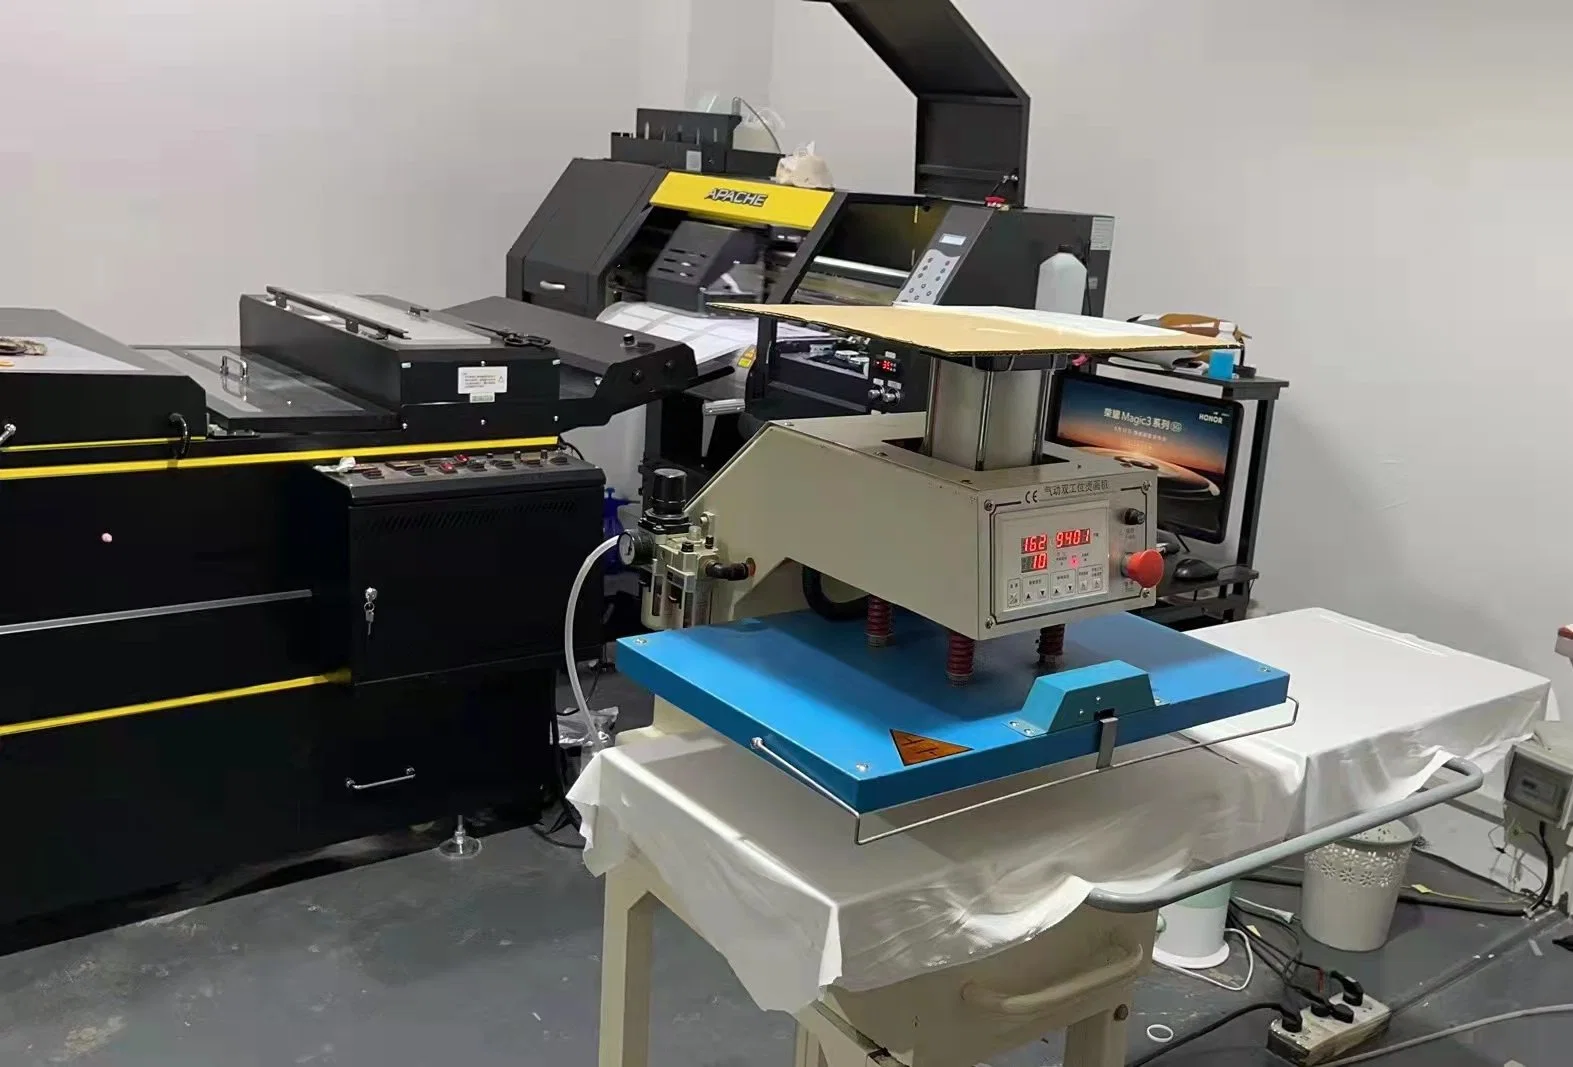 Apache I3200 печатающих головок цифровой принтер для передачи тепла ПЭТ-пленку Dtf печатной машины для футболка конструкций